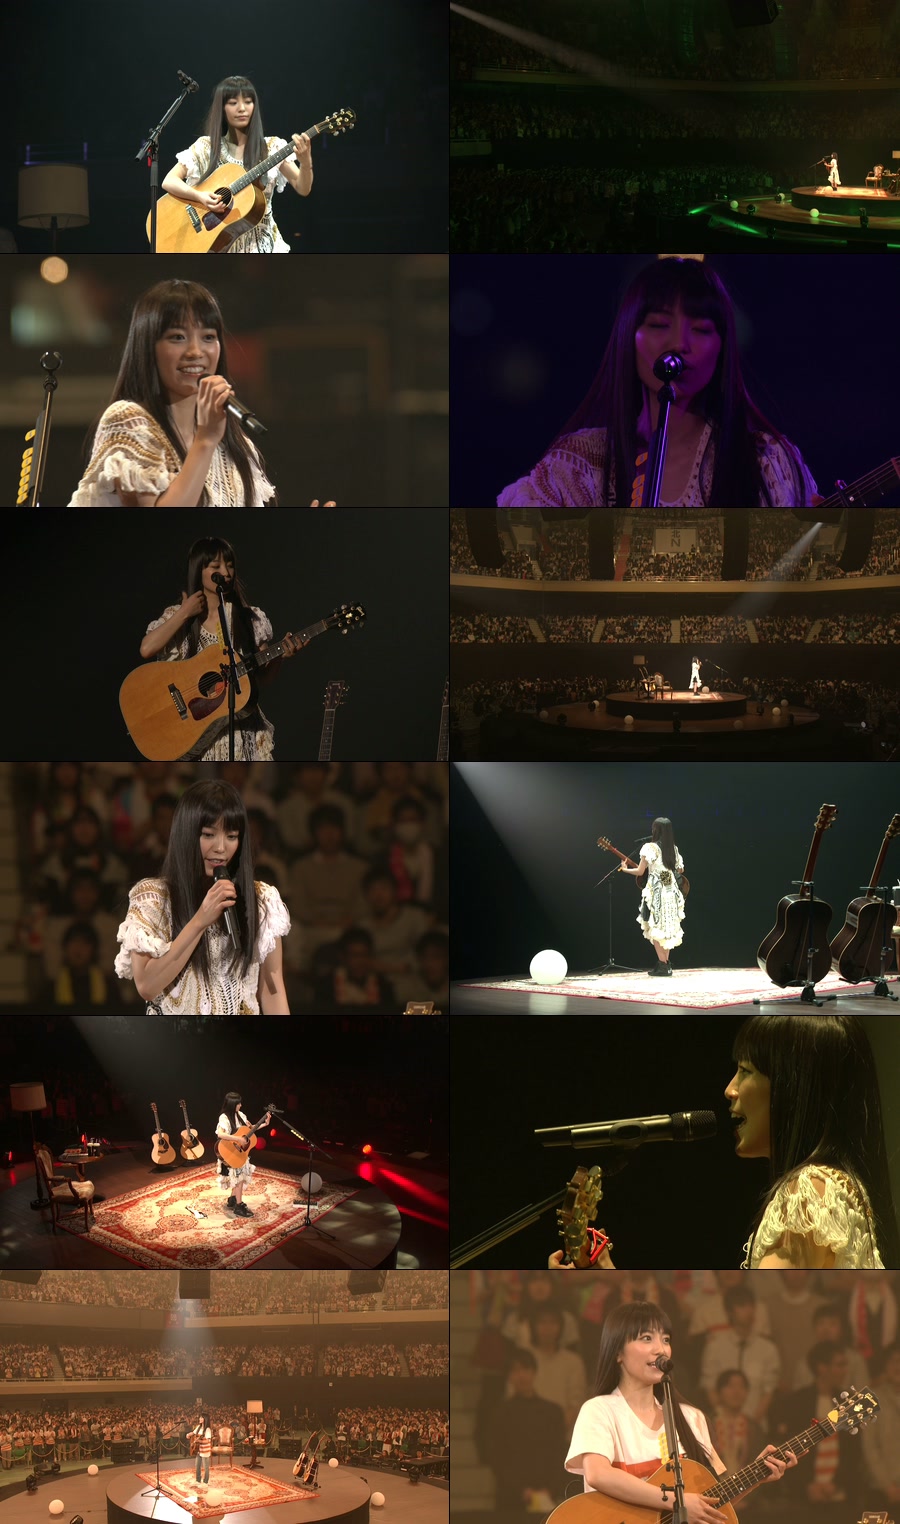 miwa – live at 武道館 ~acoguissimo~ (2015) 1080P蓝光原盘 [BDMV 42.1G]Blu-ray、日本演唱会、蓝光演唱会12